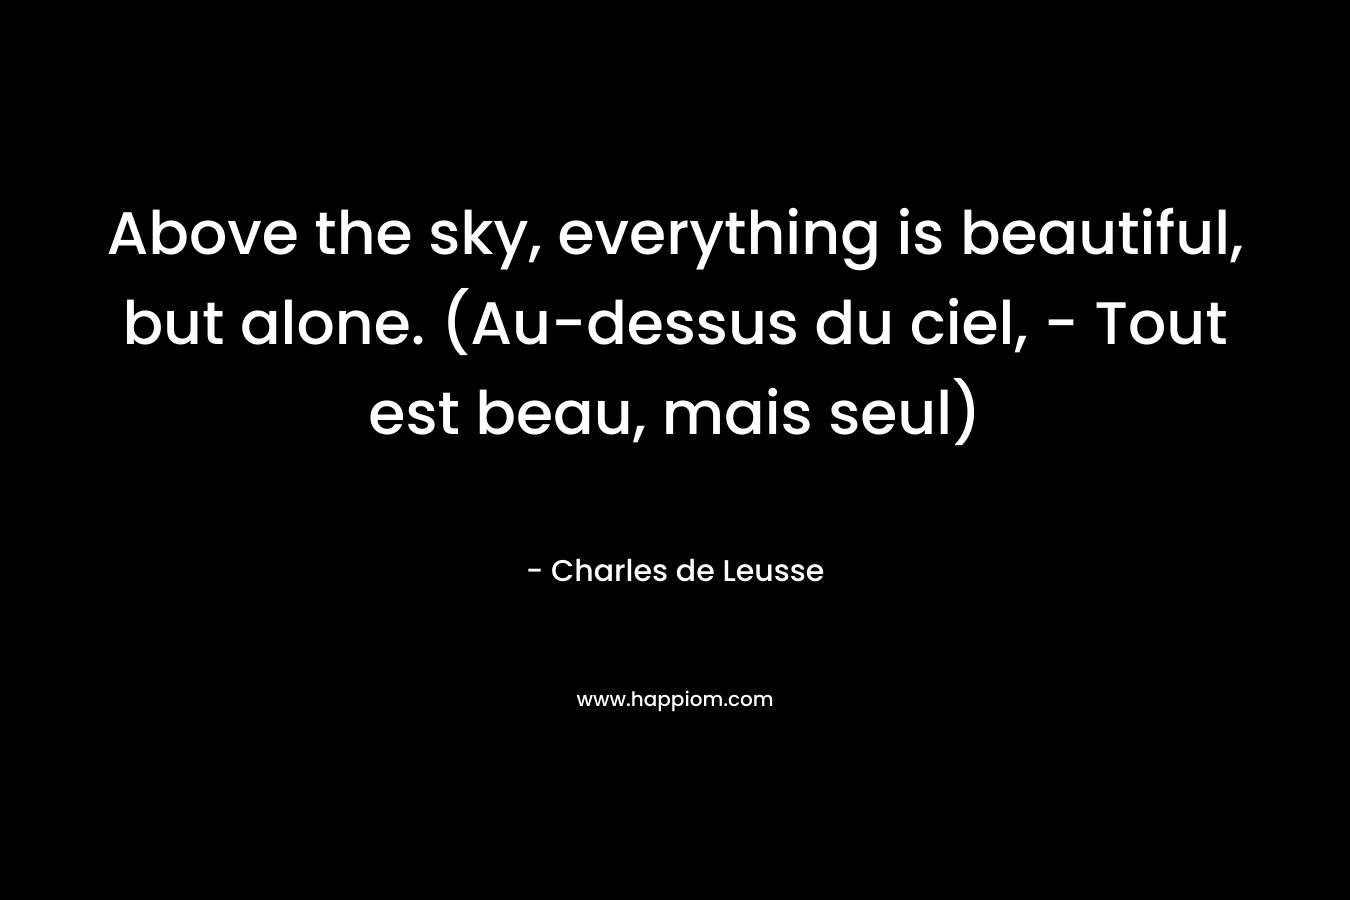 Above the sky, everything is beautiful, but alone. (Au-dessus du ciel, – Tout est beau, mais seul) – Charles de Leusse